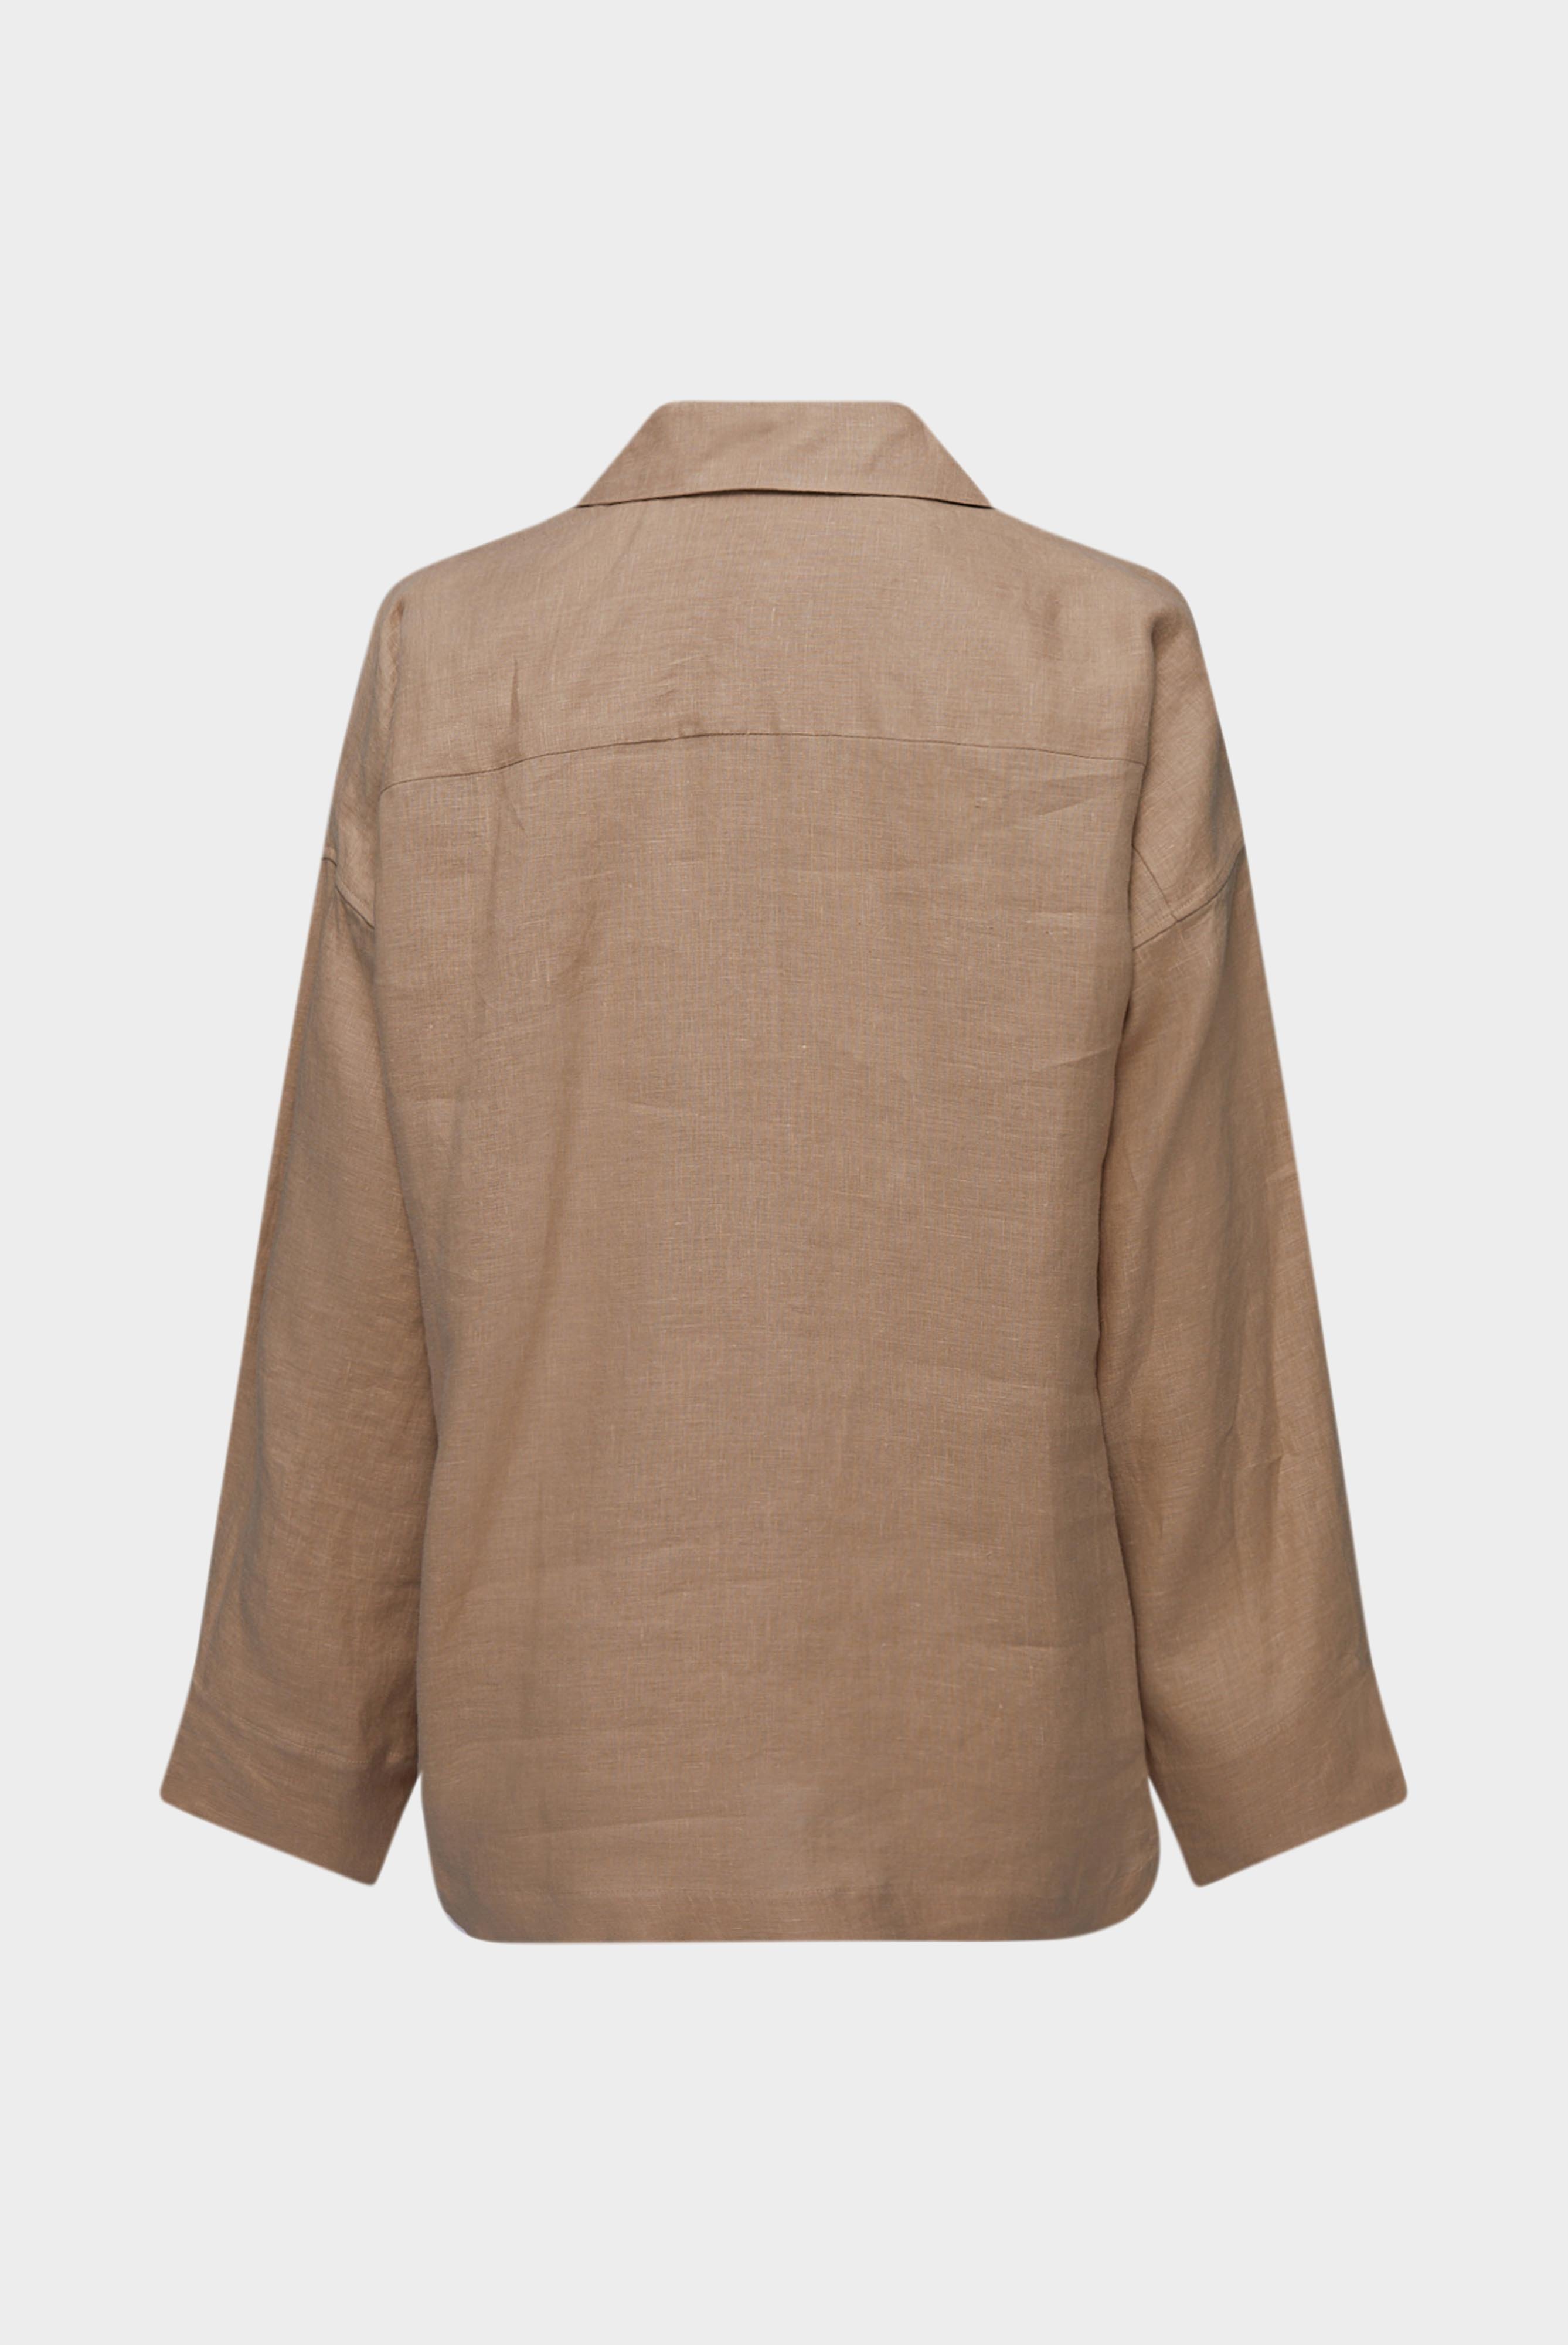 Casual Blusen+Oversize Bluse mit Hemdblusenkragen und V-Ausschnitt+05.526G.49.150555.130.32